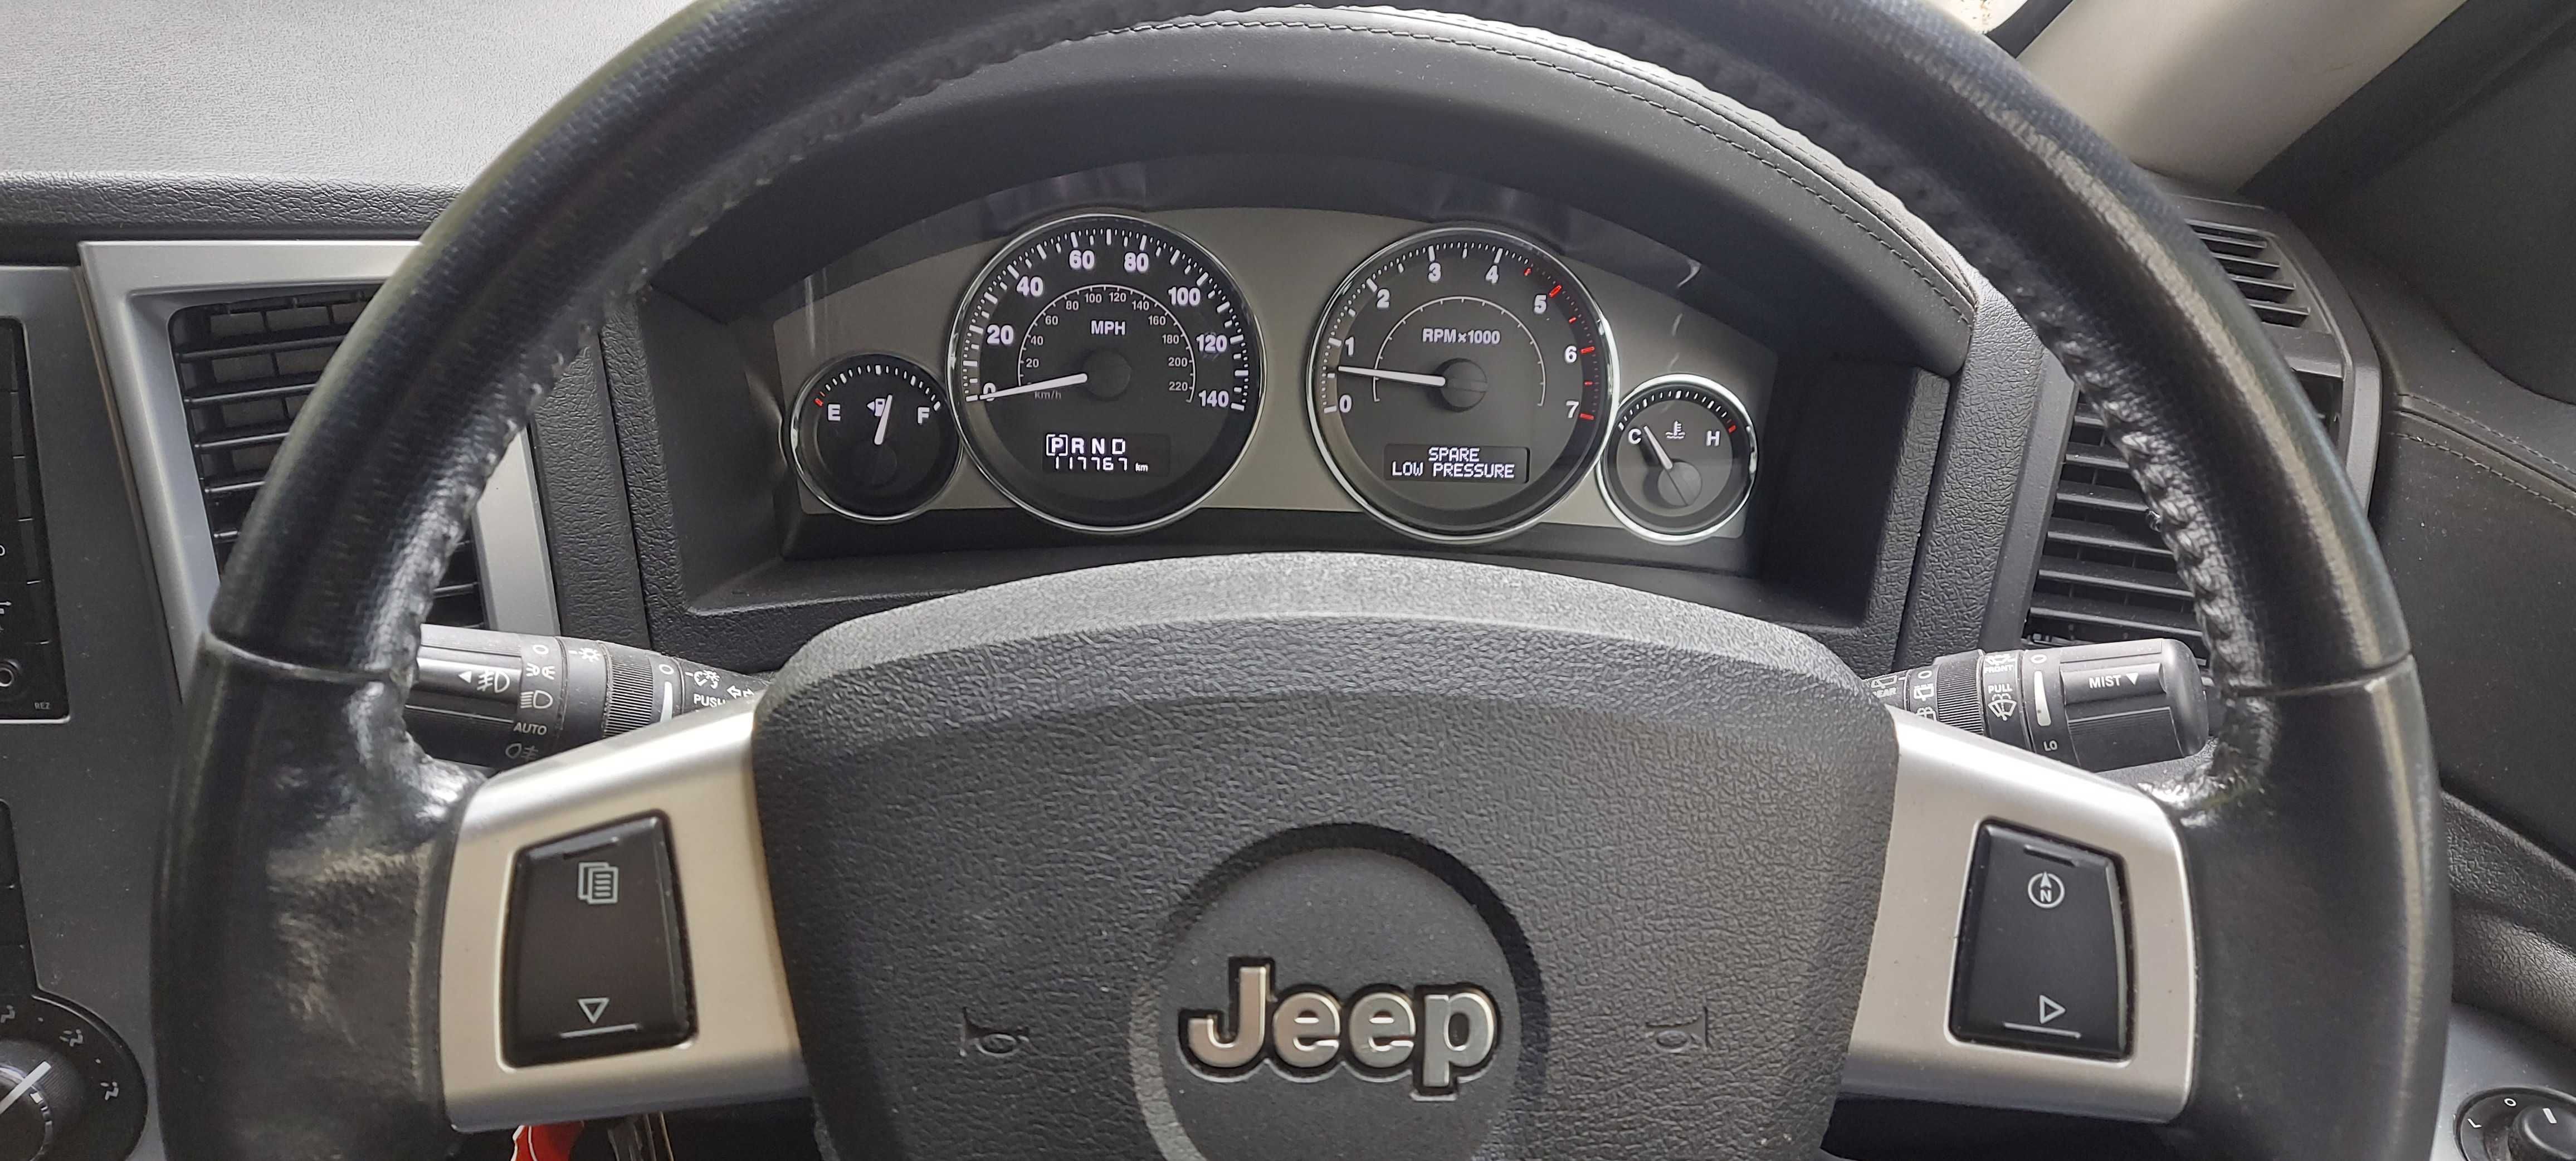 Vând Jeep Grand Cherokee fabricație 2010, de culoare argintiu